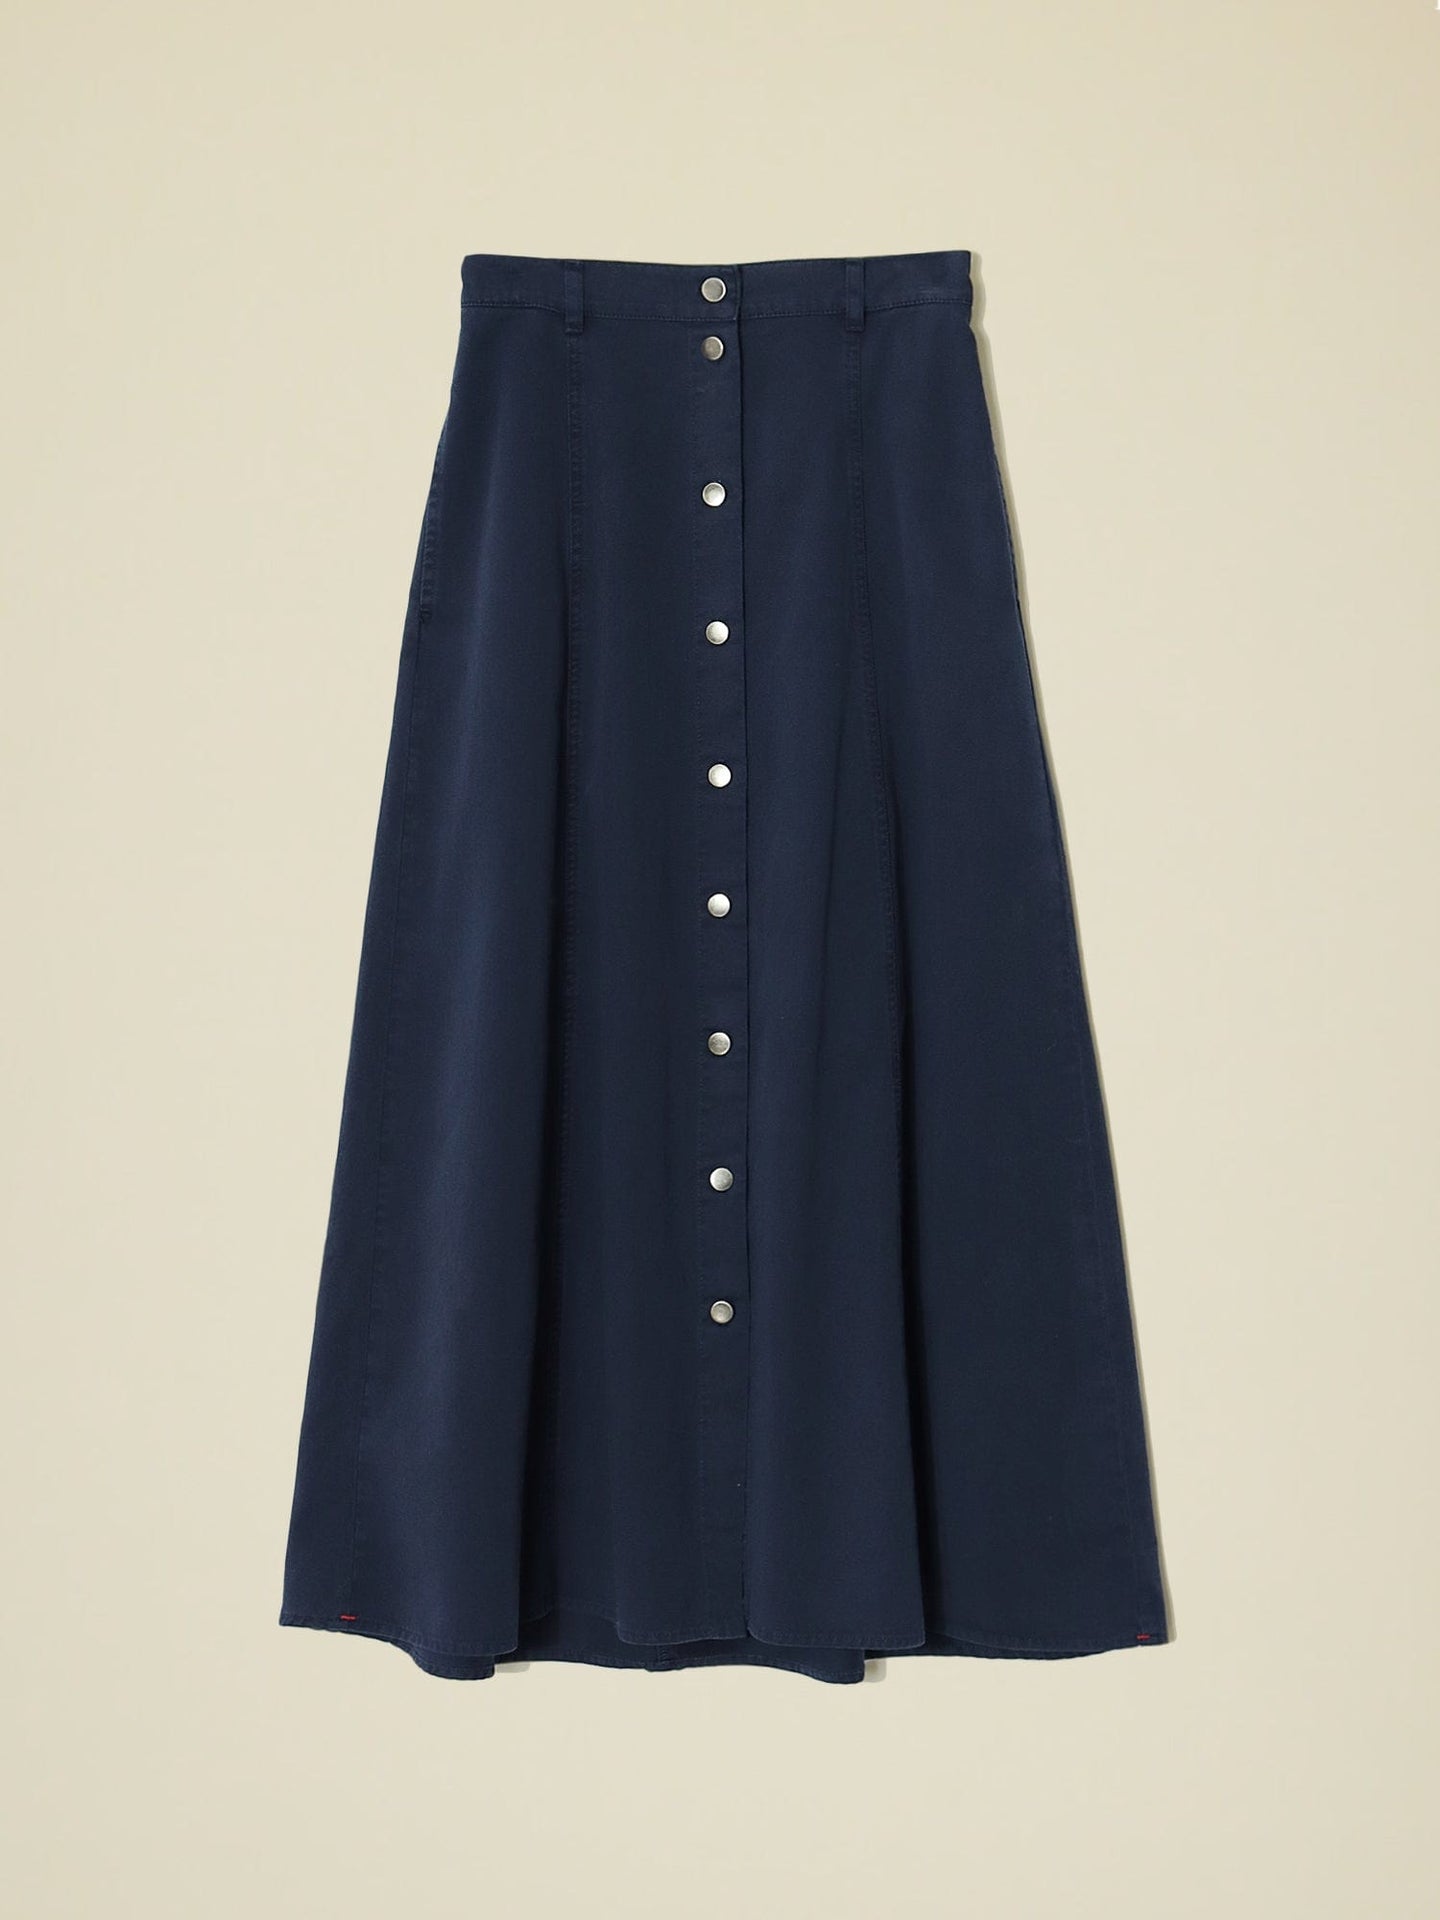 Xirena Skirt Navy Spence Skirt